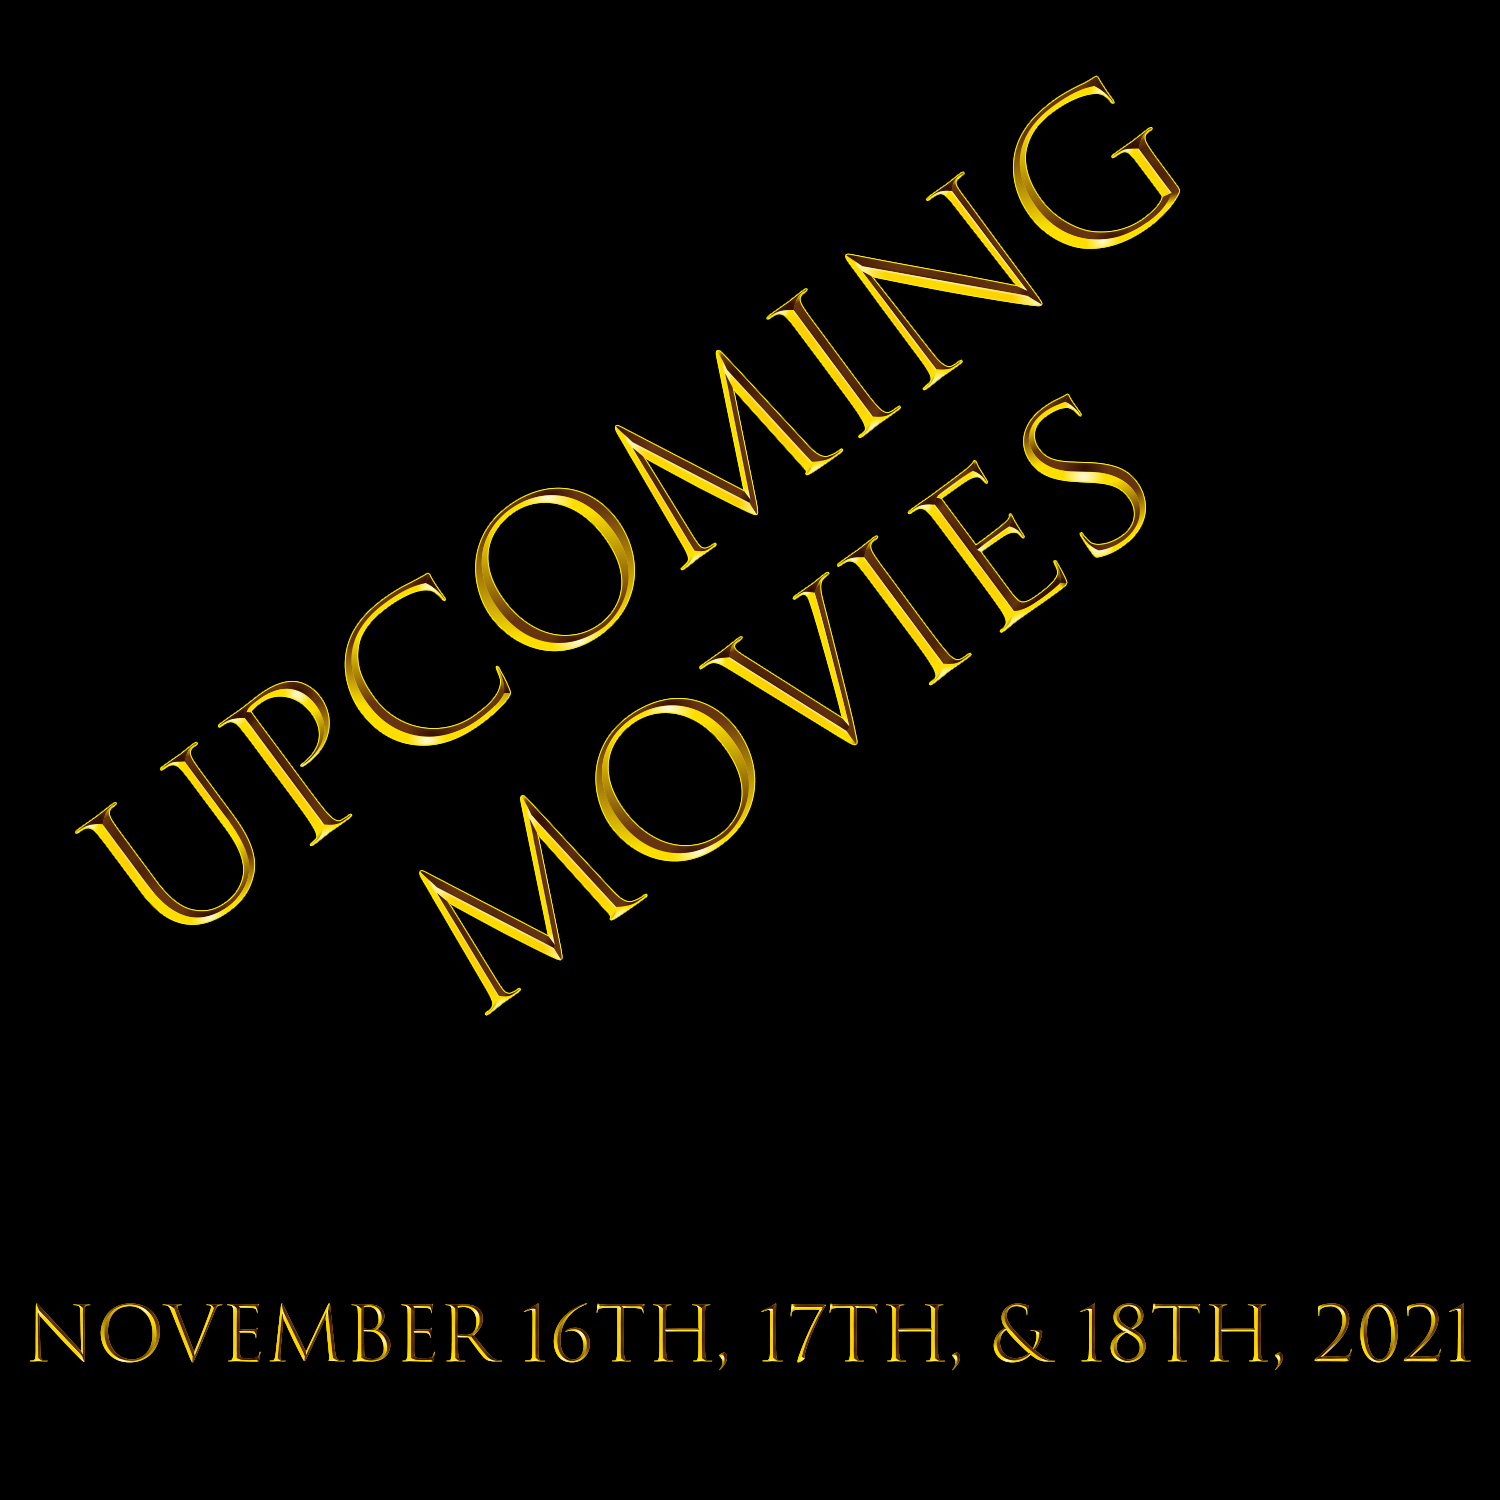 Upcoming Movies - November 16th, 17th, & 18th, 2021